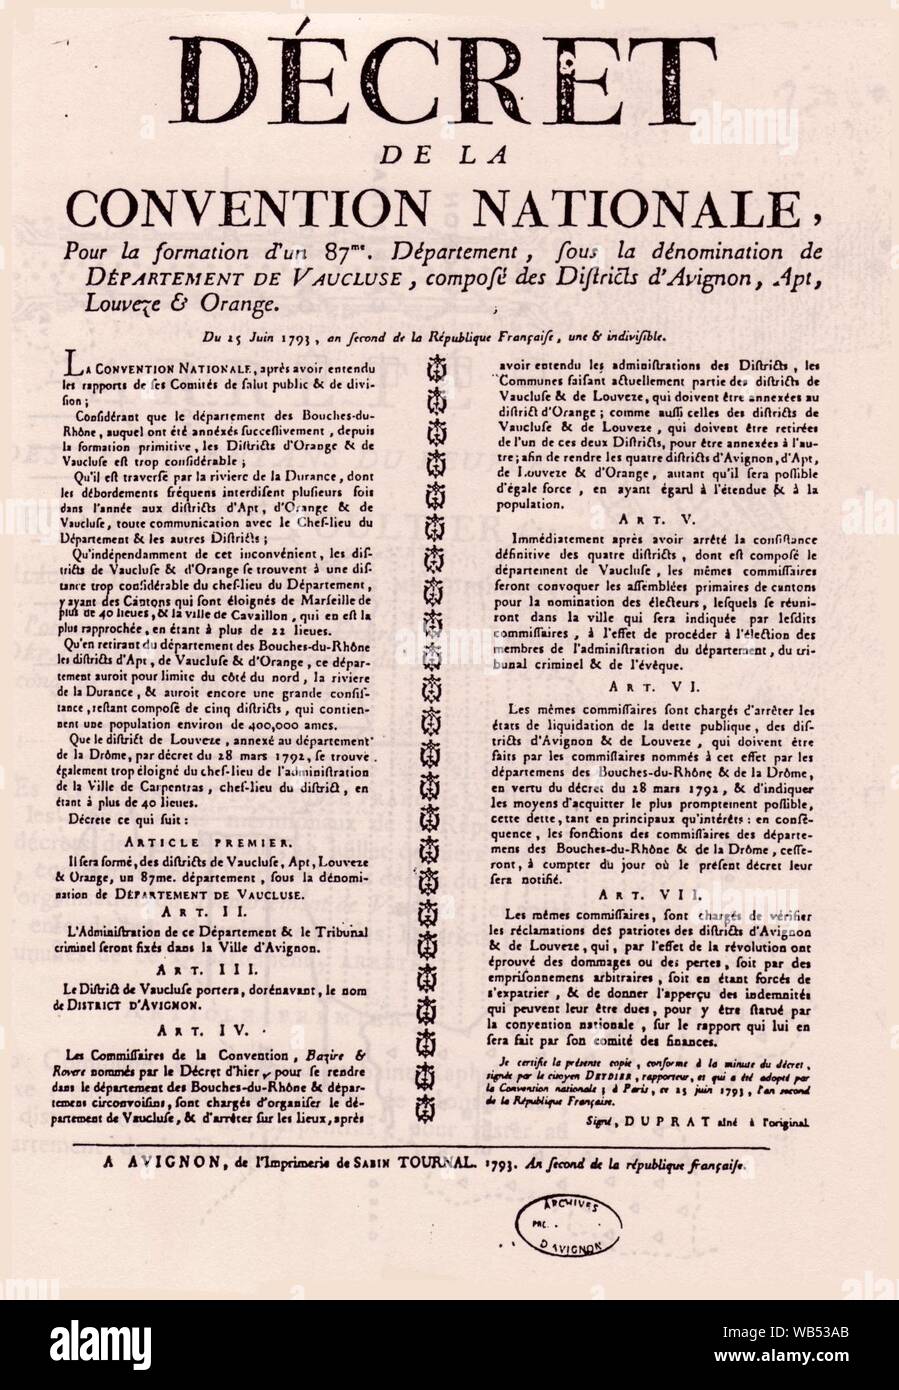 Décret de la Convention Nationale Département de Vaucluse. Stock Photo